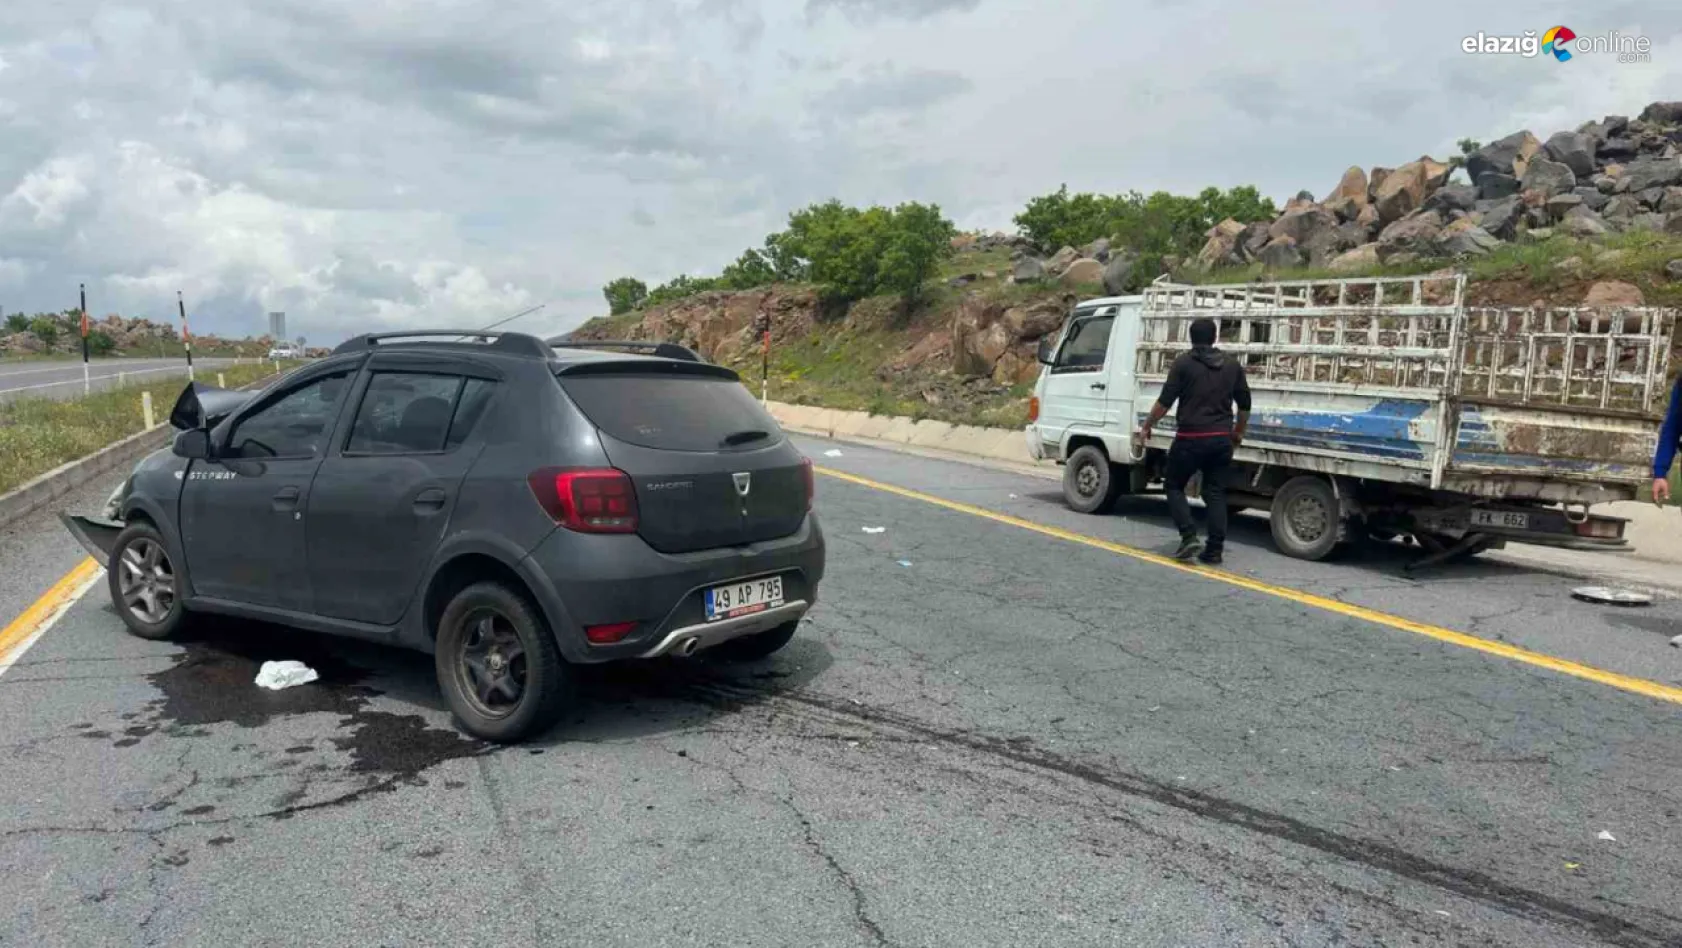 Elazığ'da meydana gelen trafik kazasında bir kişi hayatını kaybetti